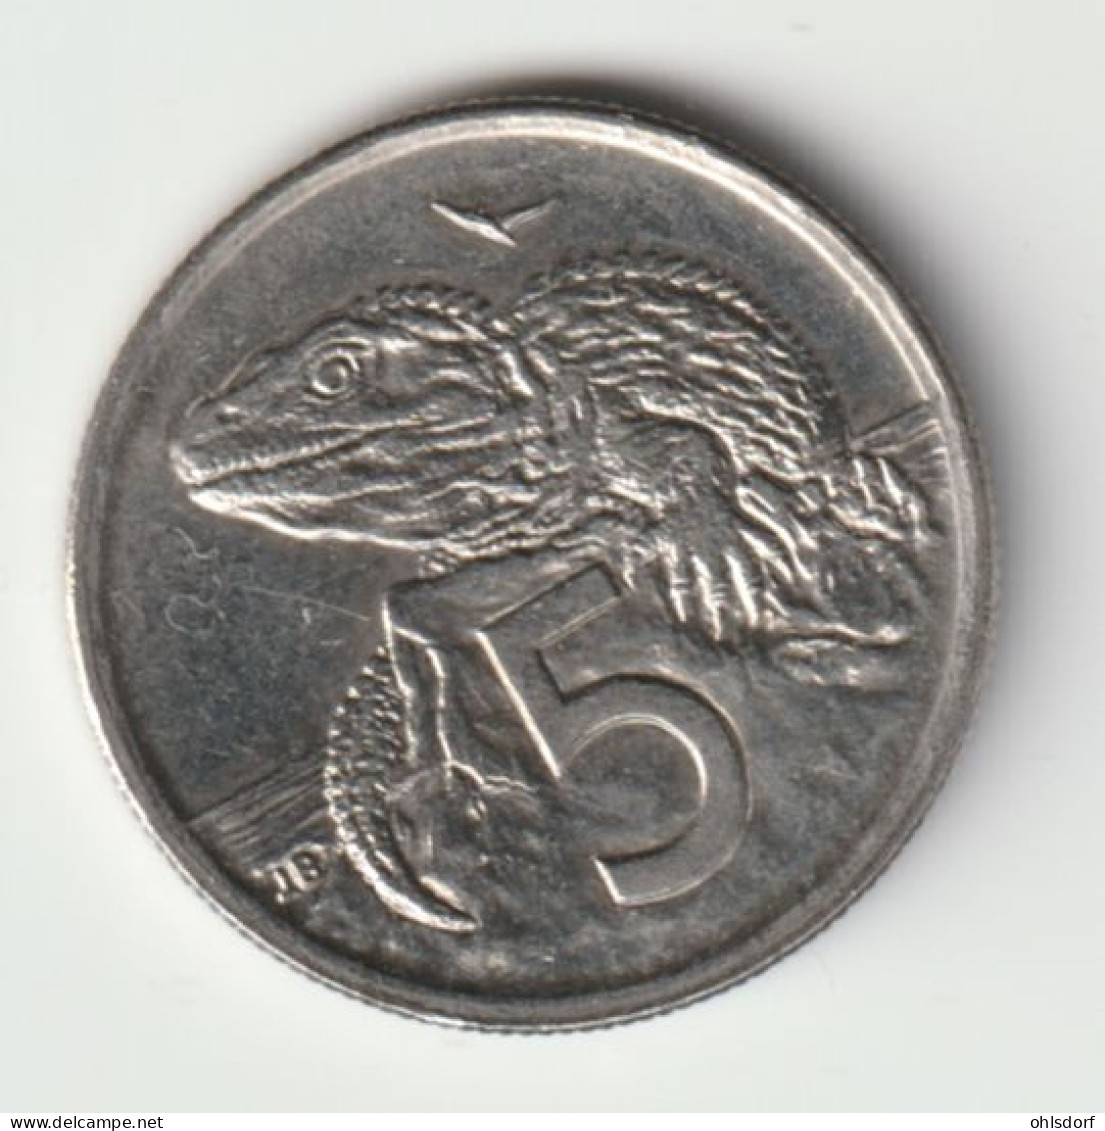 NEW ZEALAND 1995: 5 Cents, KM 60 - Neuseeland